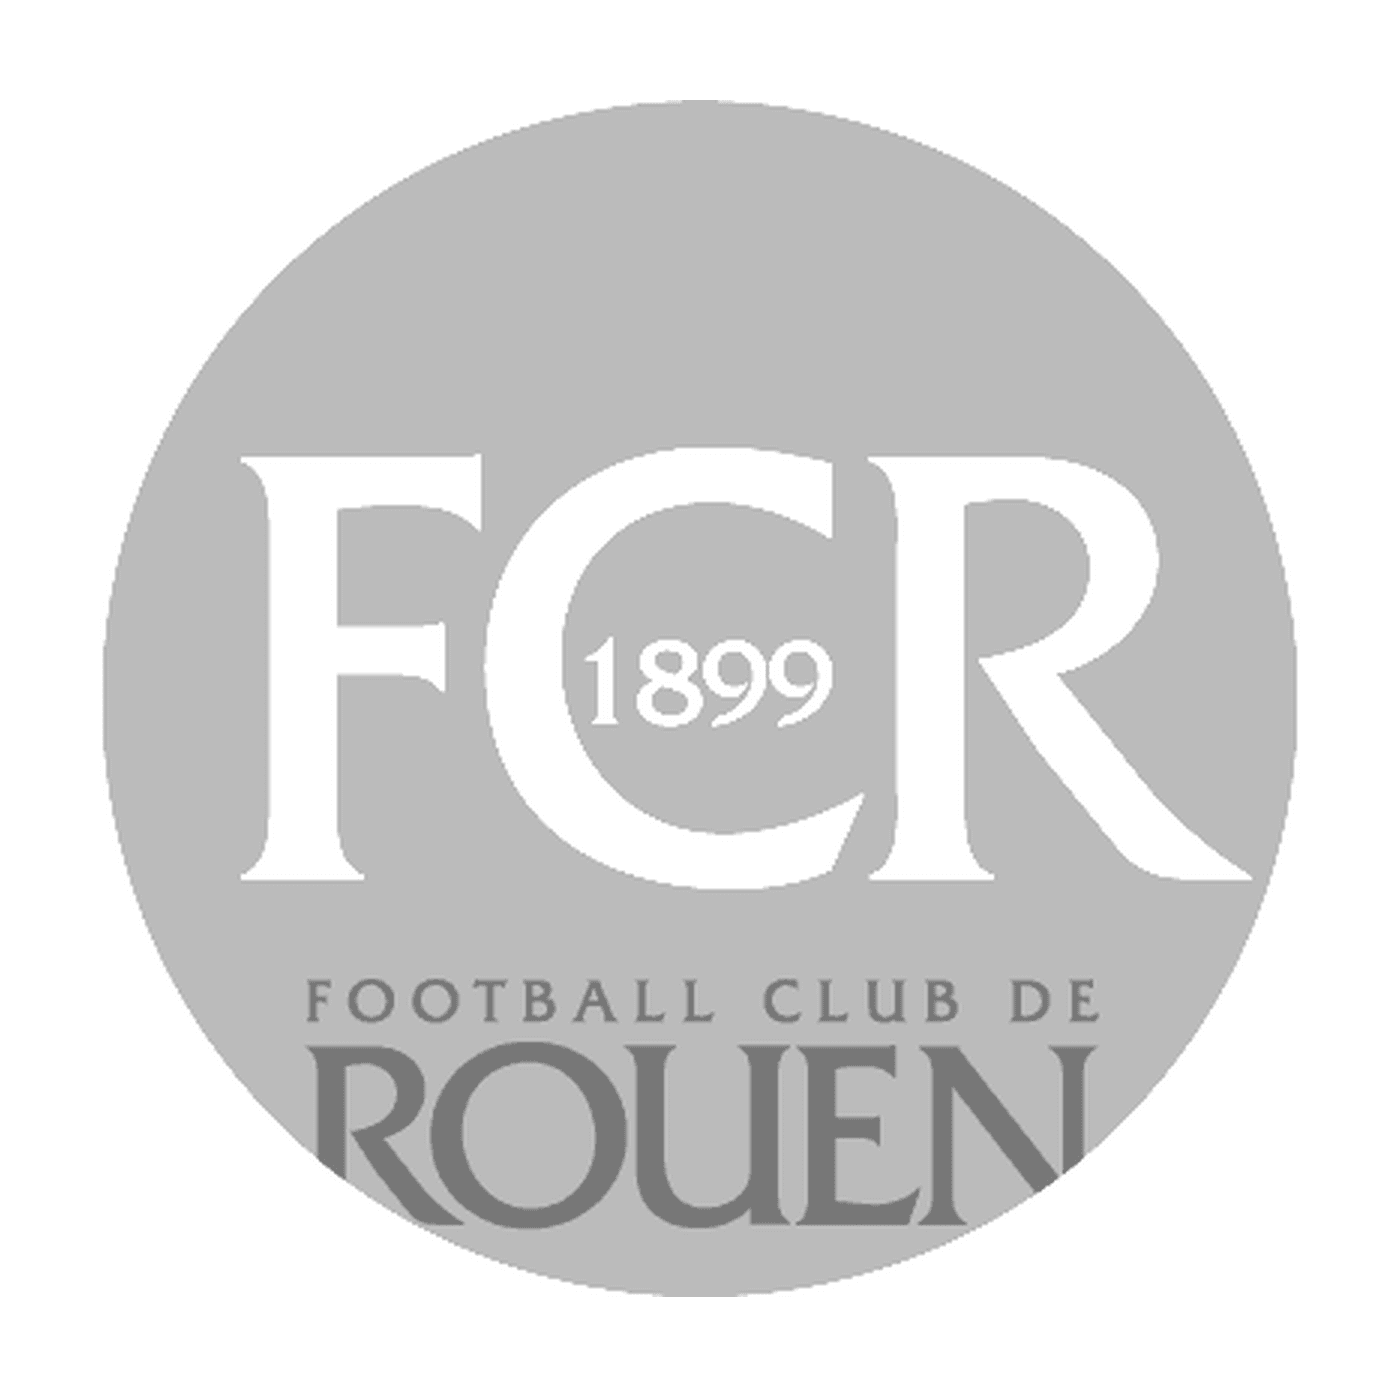  Logo del Football Club de Rouen 